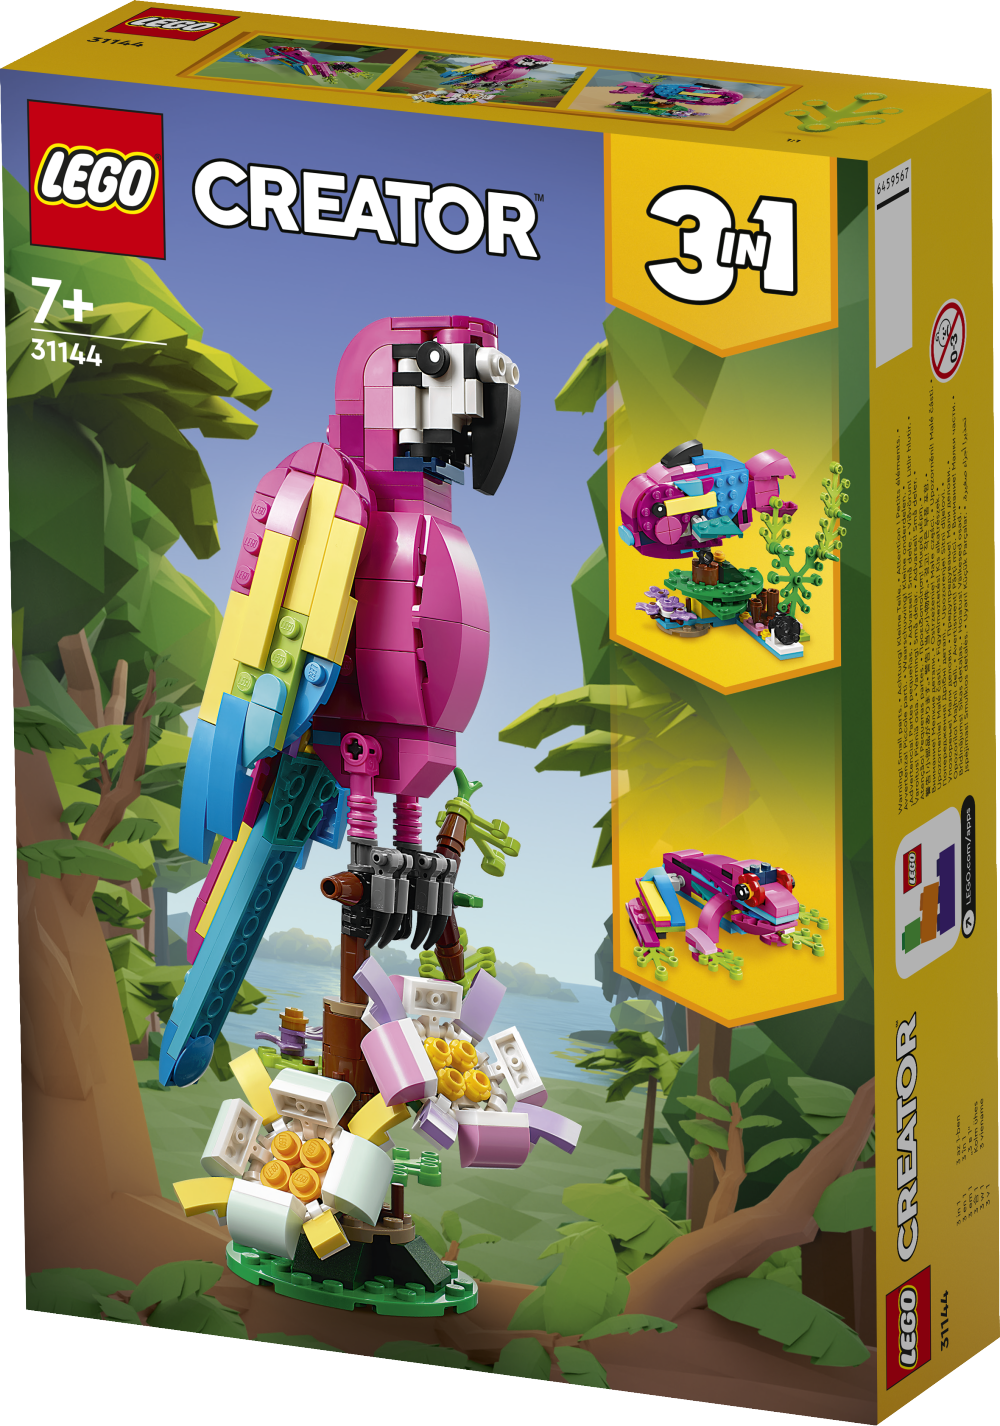 LEGO Creator - Eksoottinen pinkki papukaija 7+